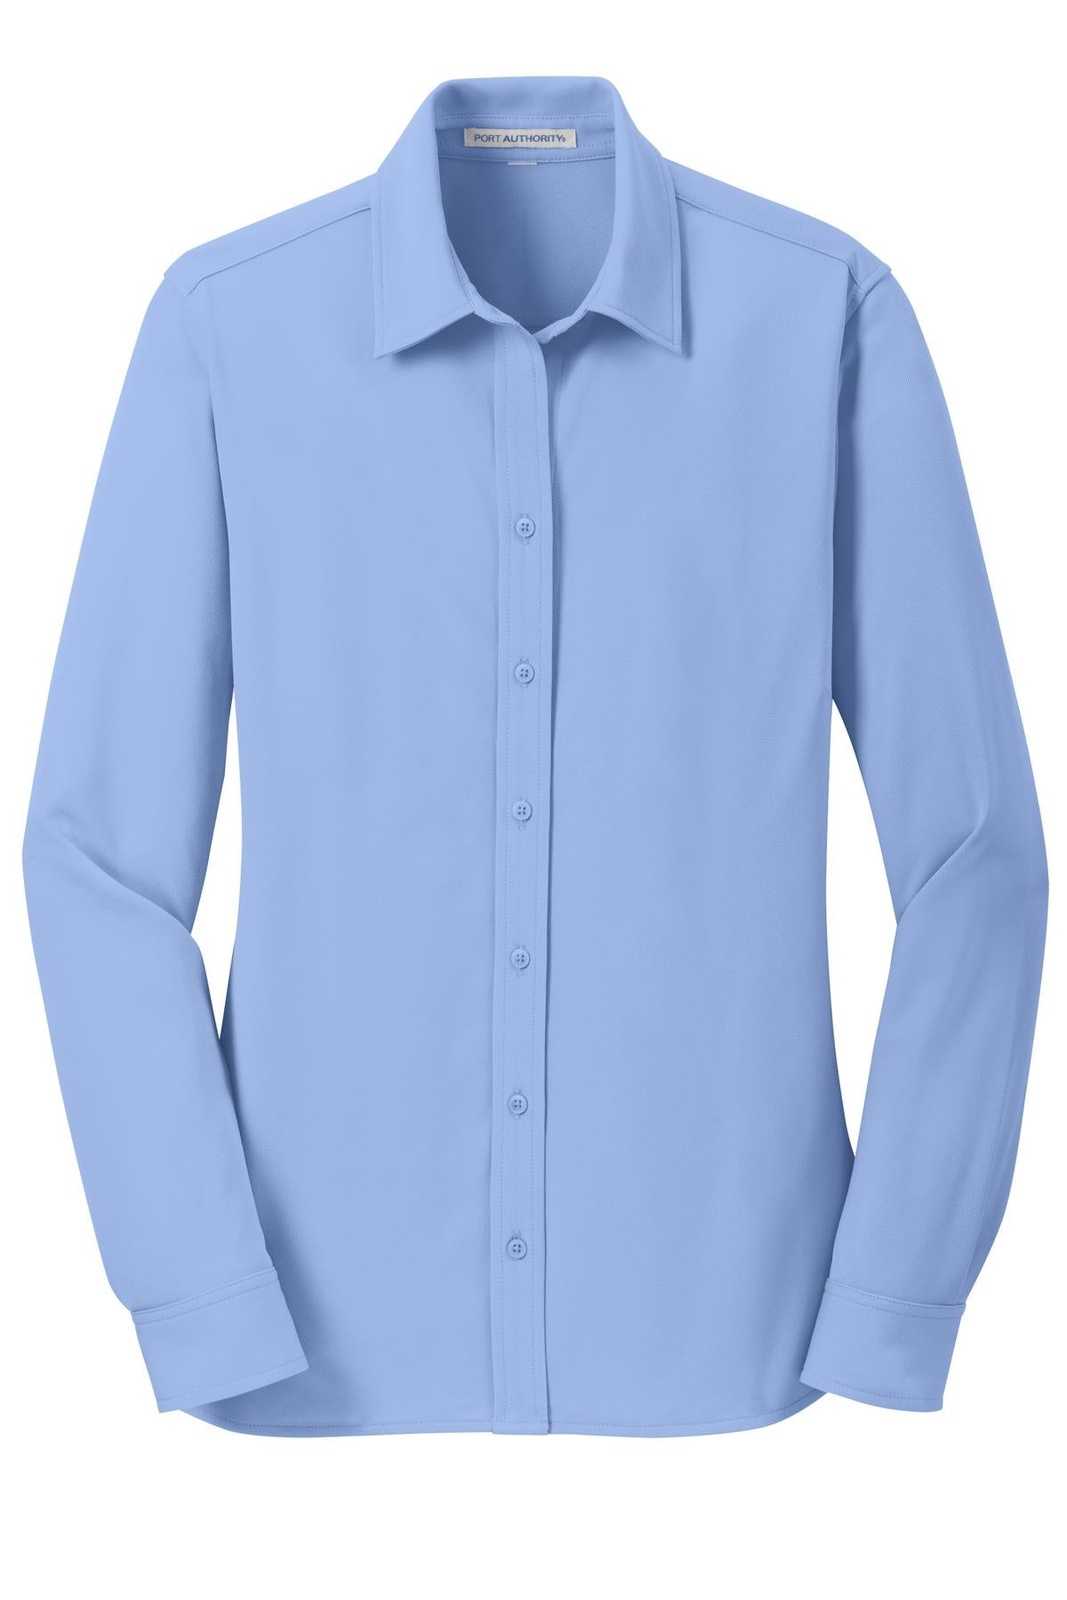 Port Authority L570 Ladies Dimension Knit Dress Shirt - Dress Shirt Blue - HIT a Double - 5